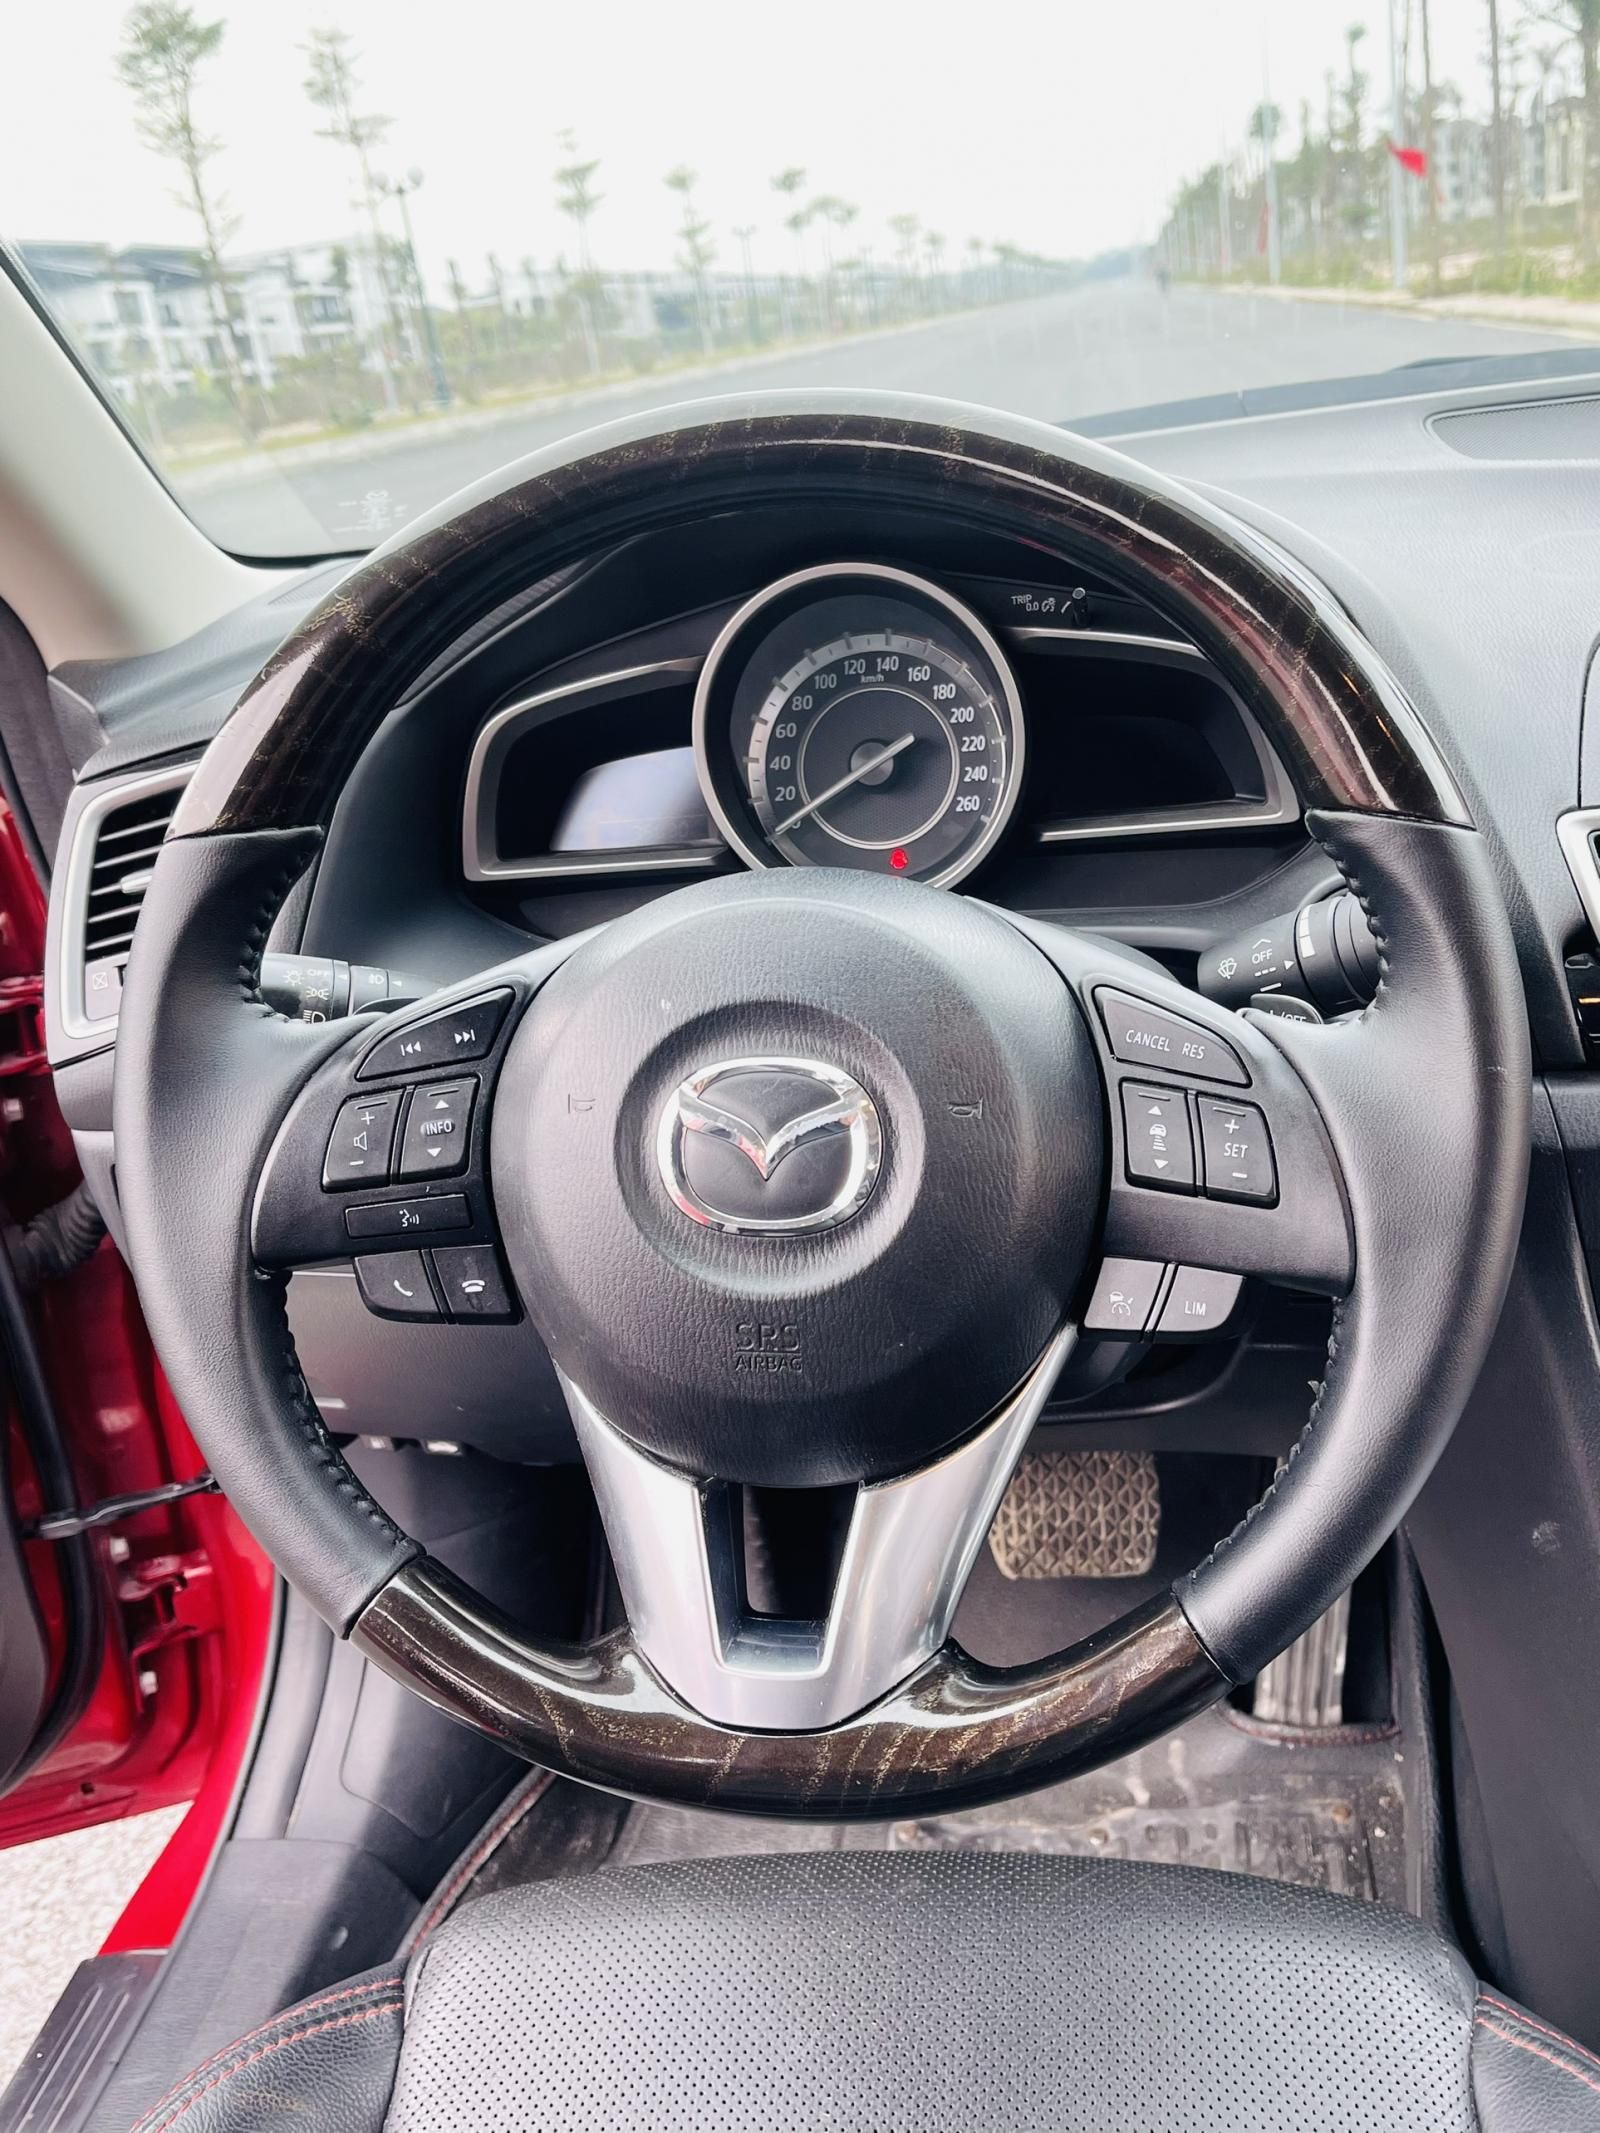 Mazda 3 2015 - Màu đỏ